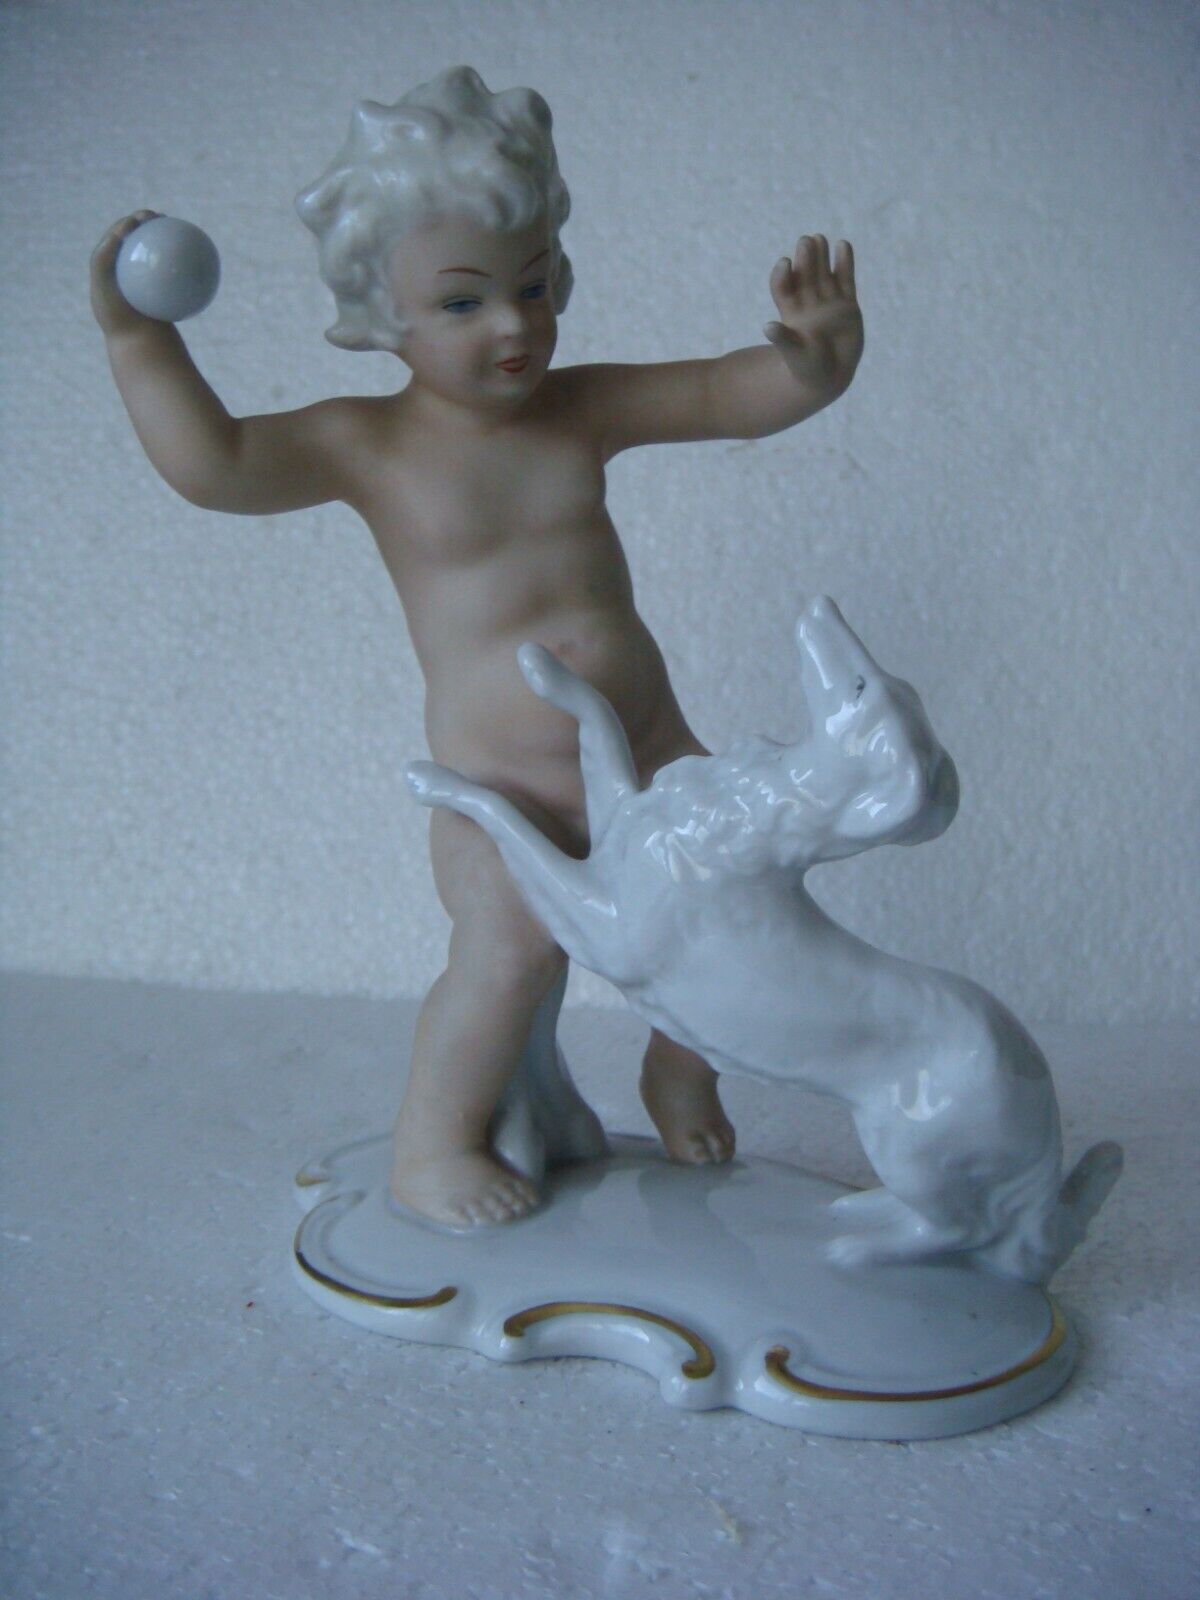  RRR RARE Antique Vintage Germany Schau Bach Kunst Porcelain Figurine